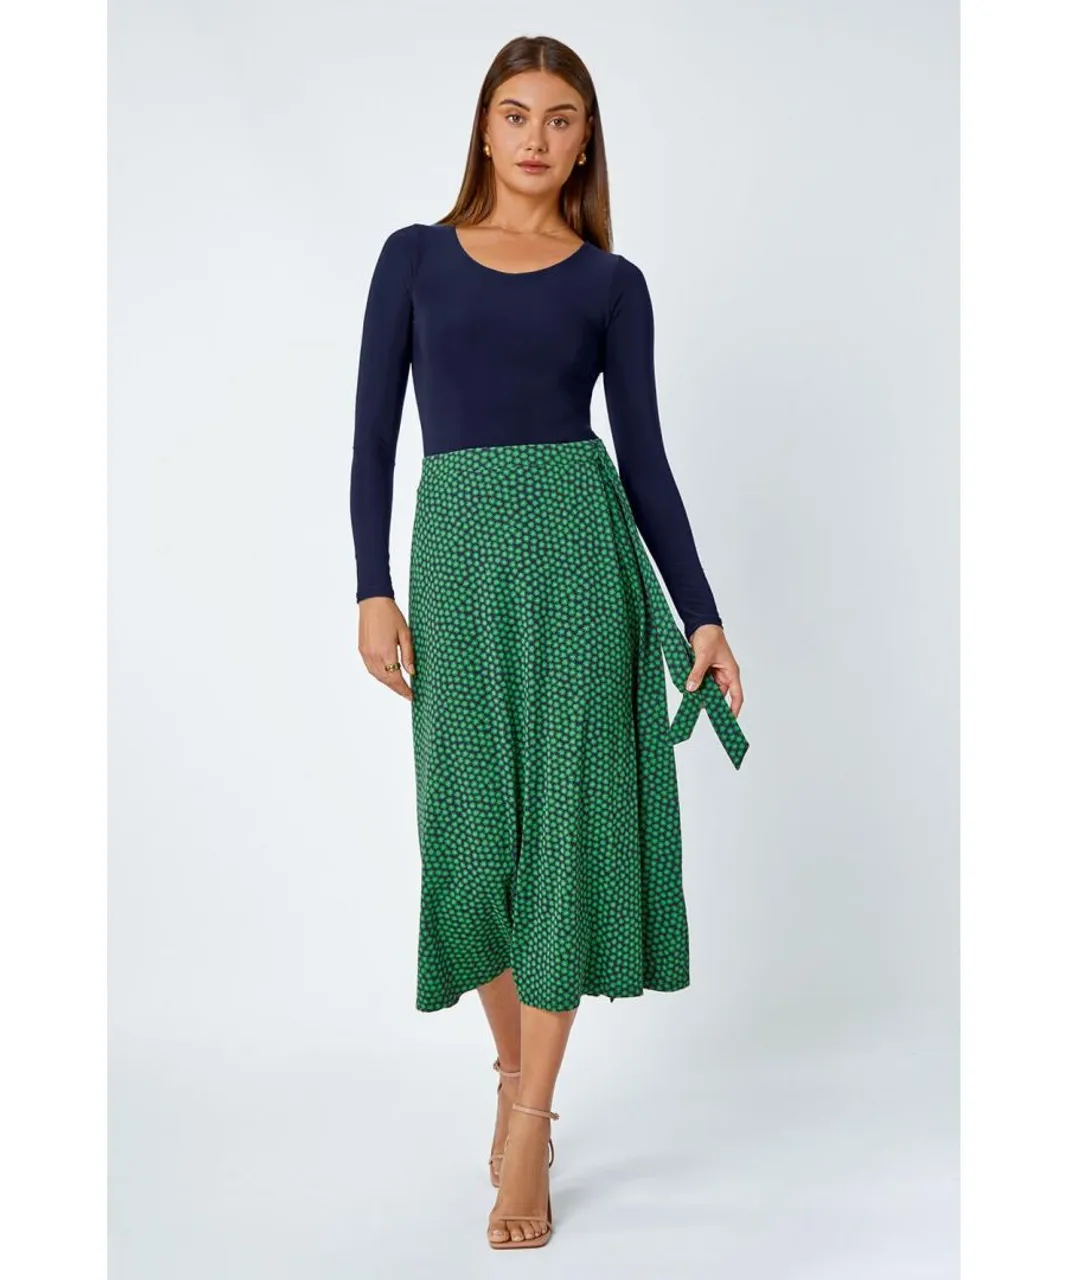 Roman Womens Cotton Blend Spot Print Midi Wrap Skirt - Green